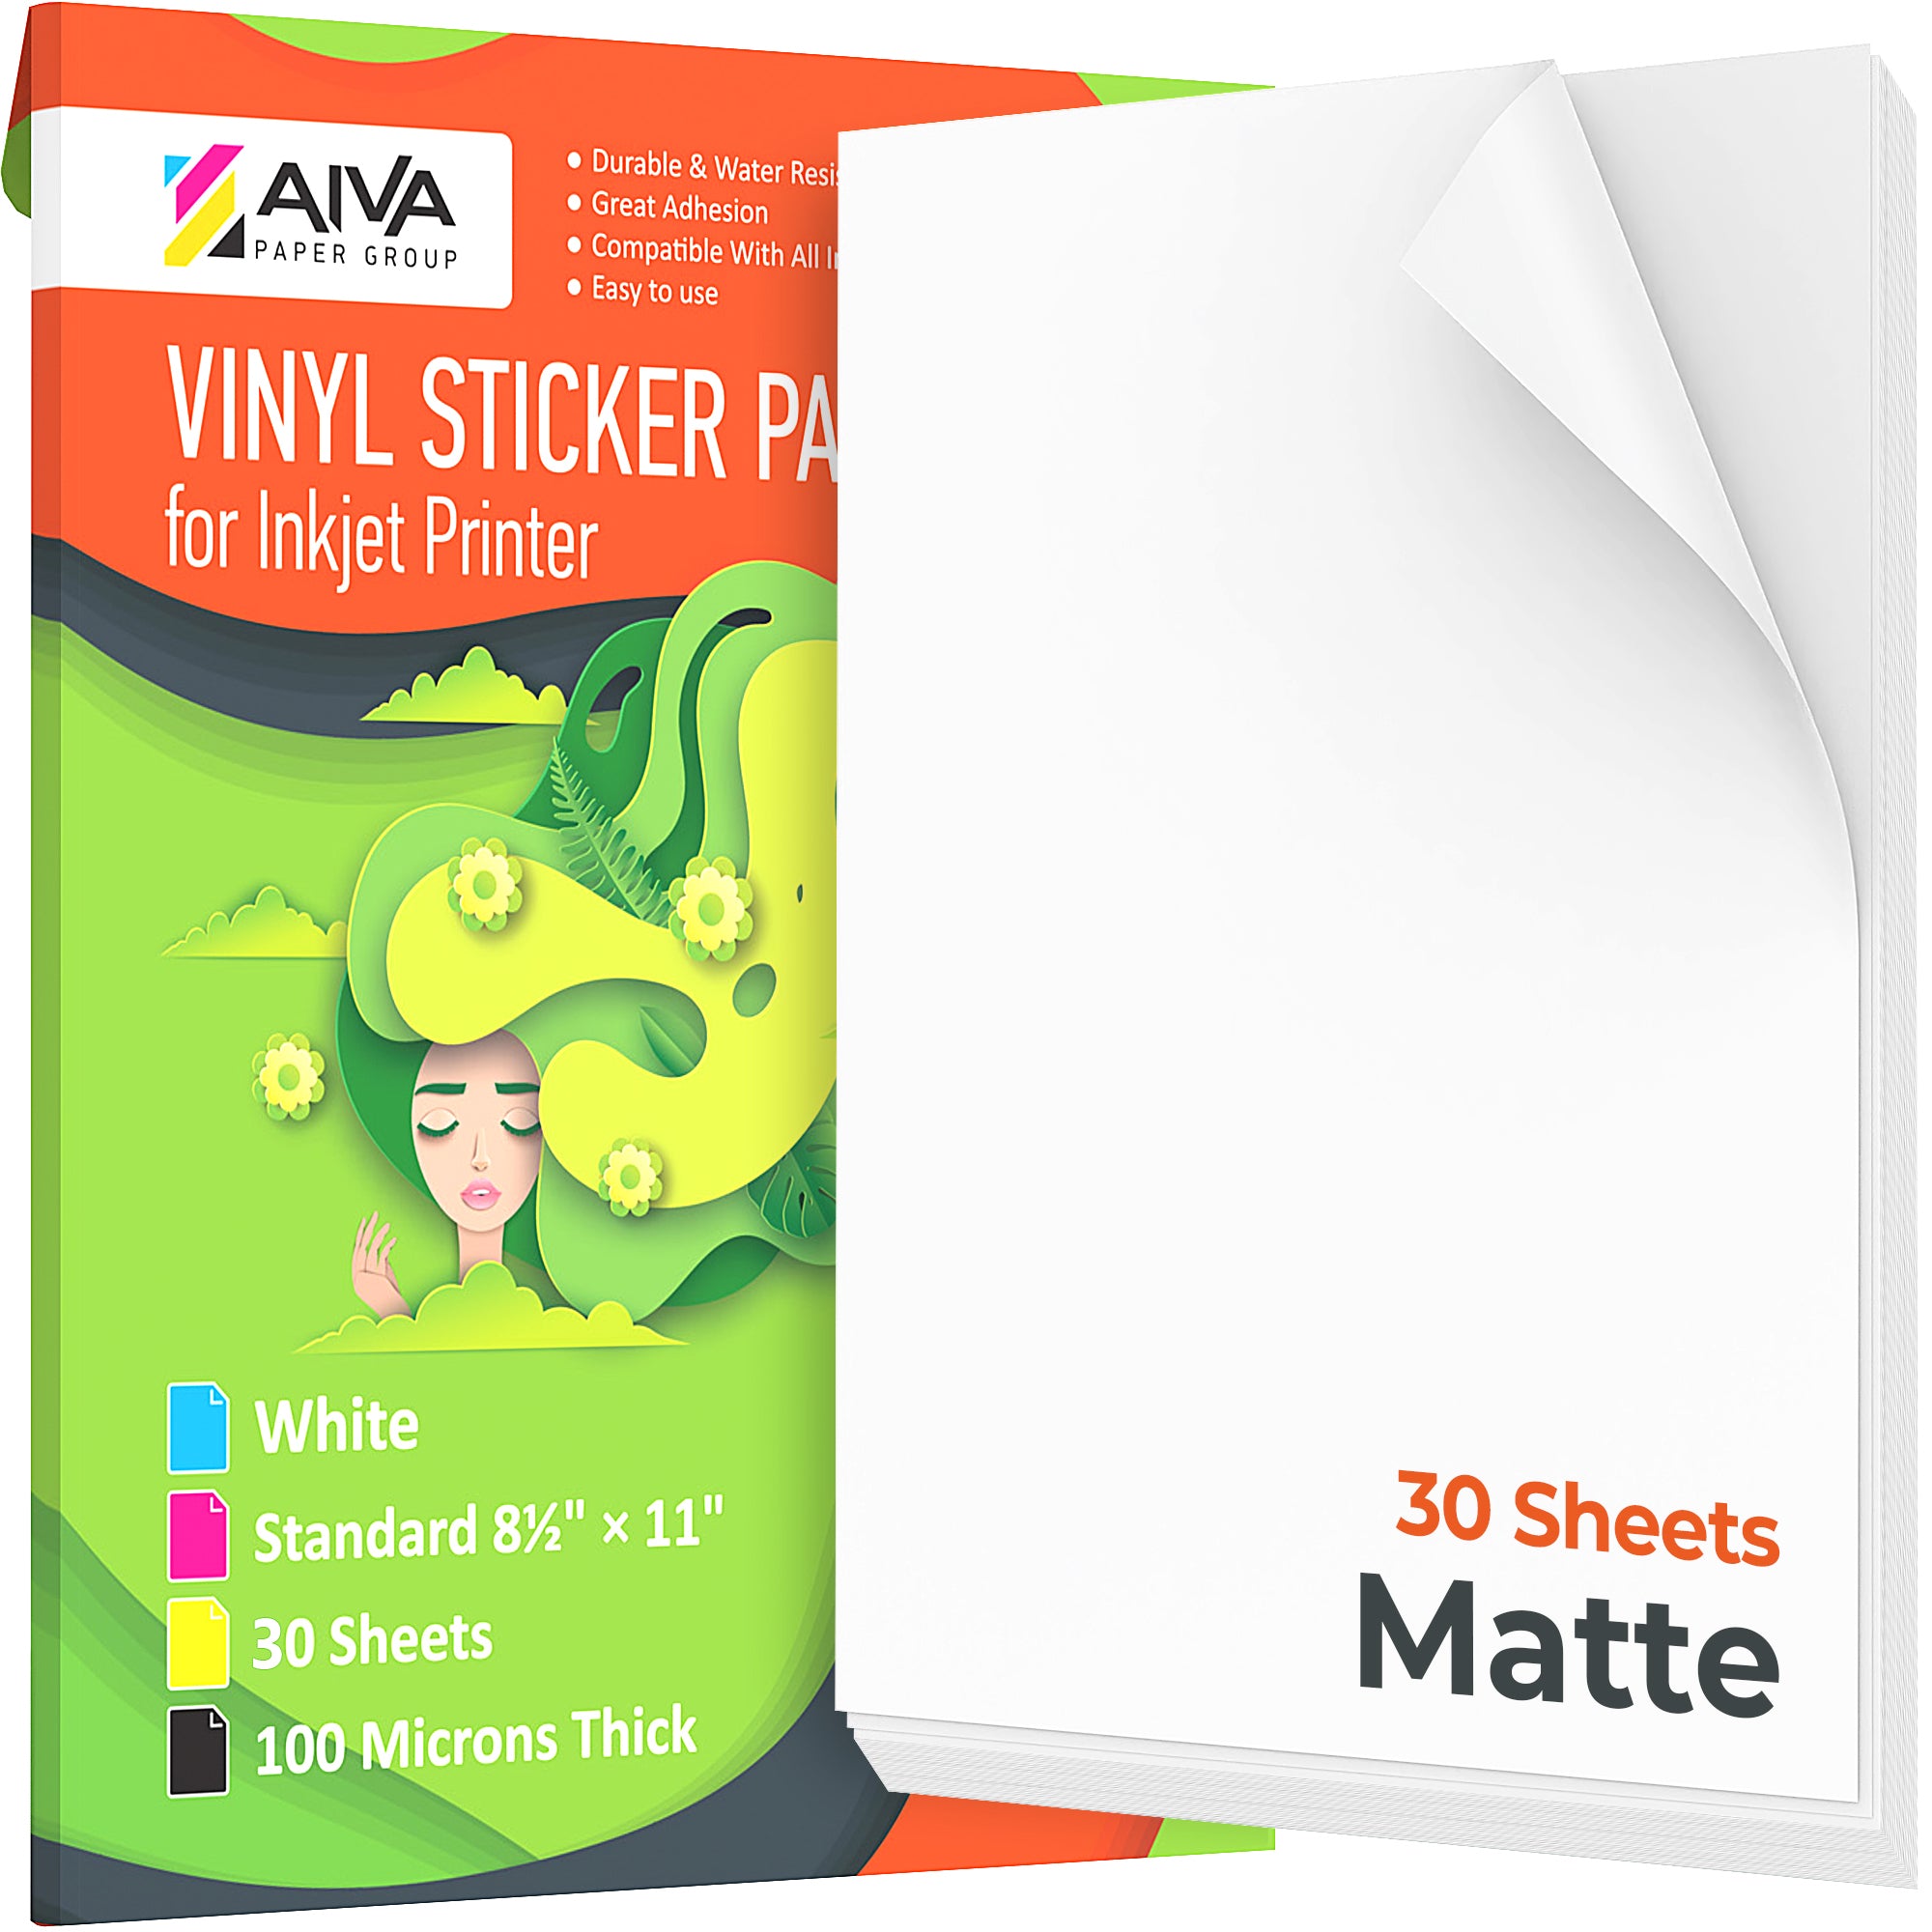  Printable Vinyl Sticker Paper for Inkjet Printer